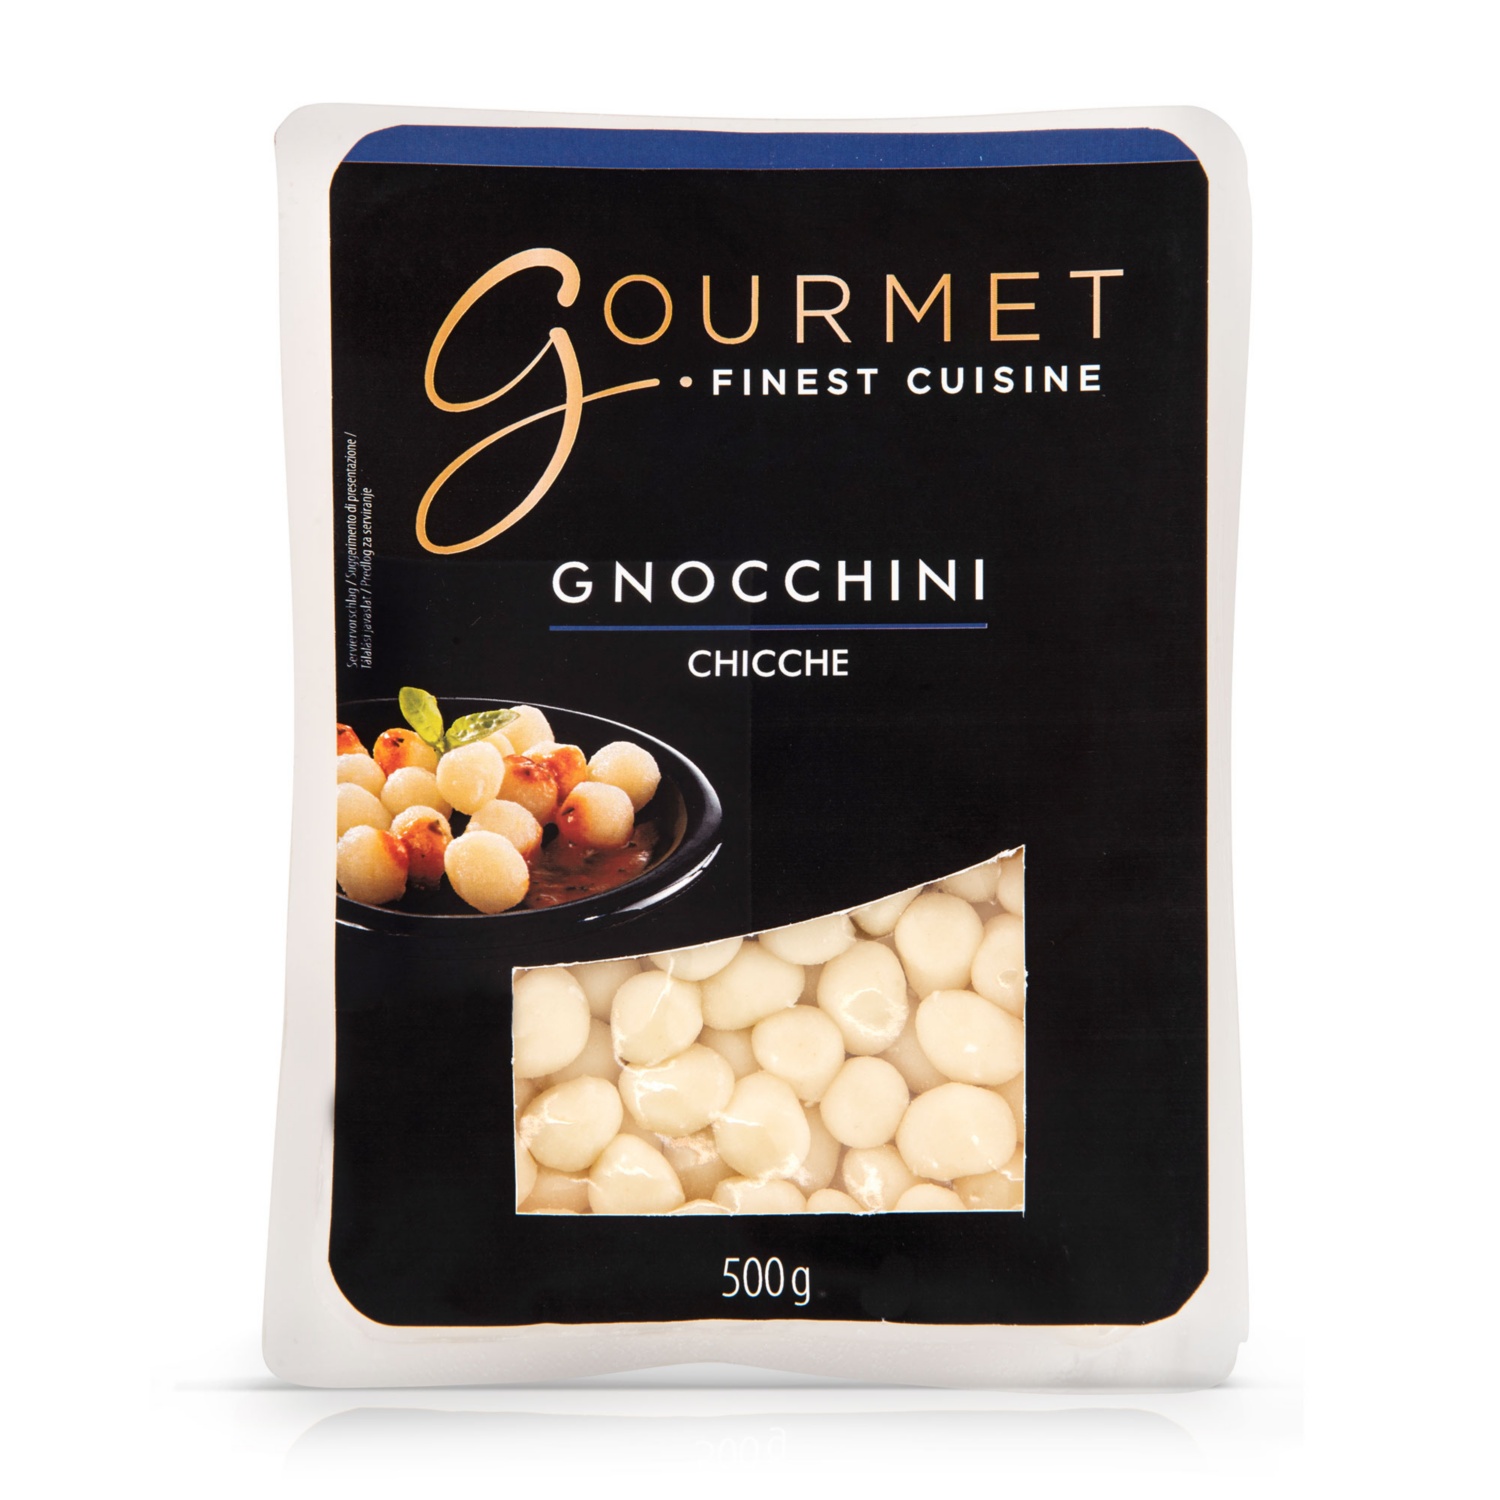 GOURMET FINEST CUISINE Gnocchini